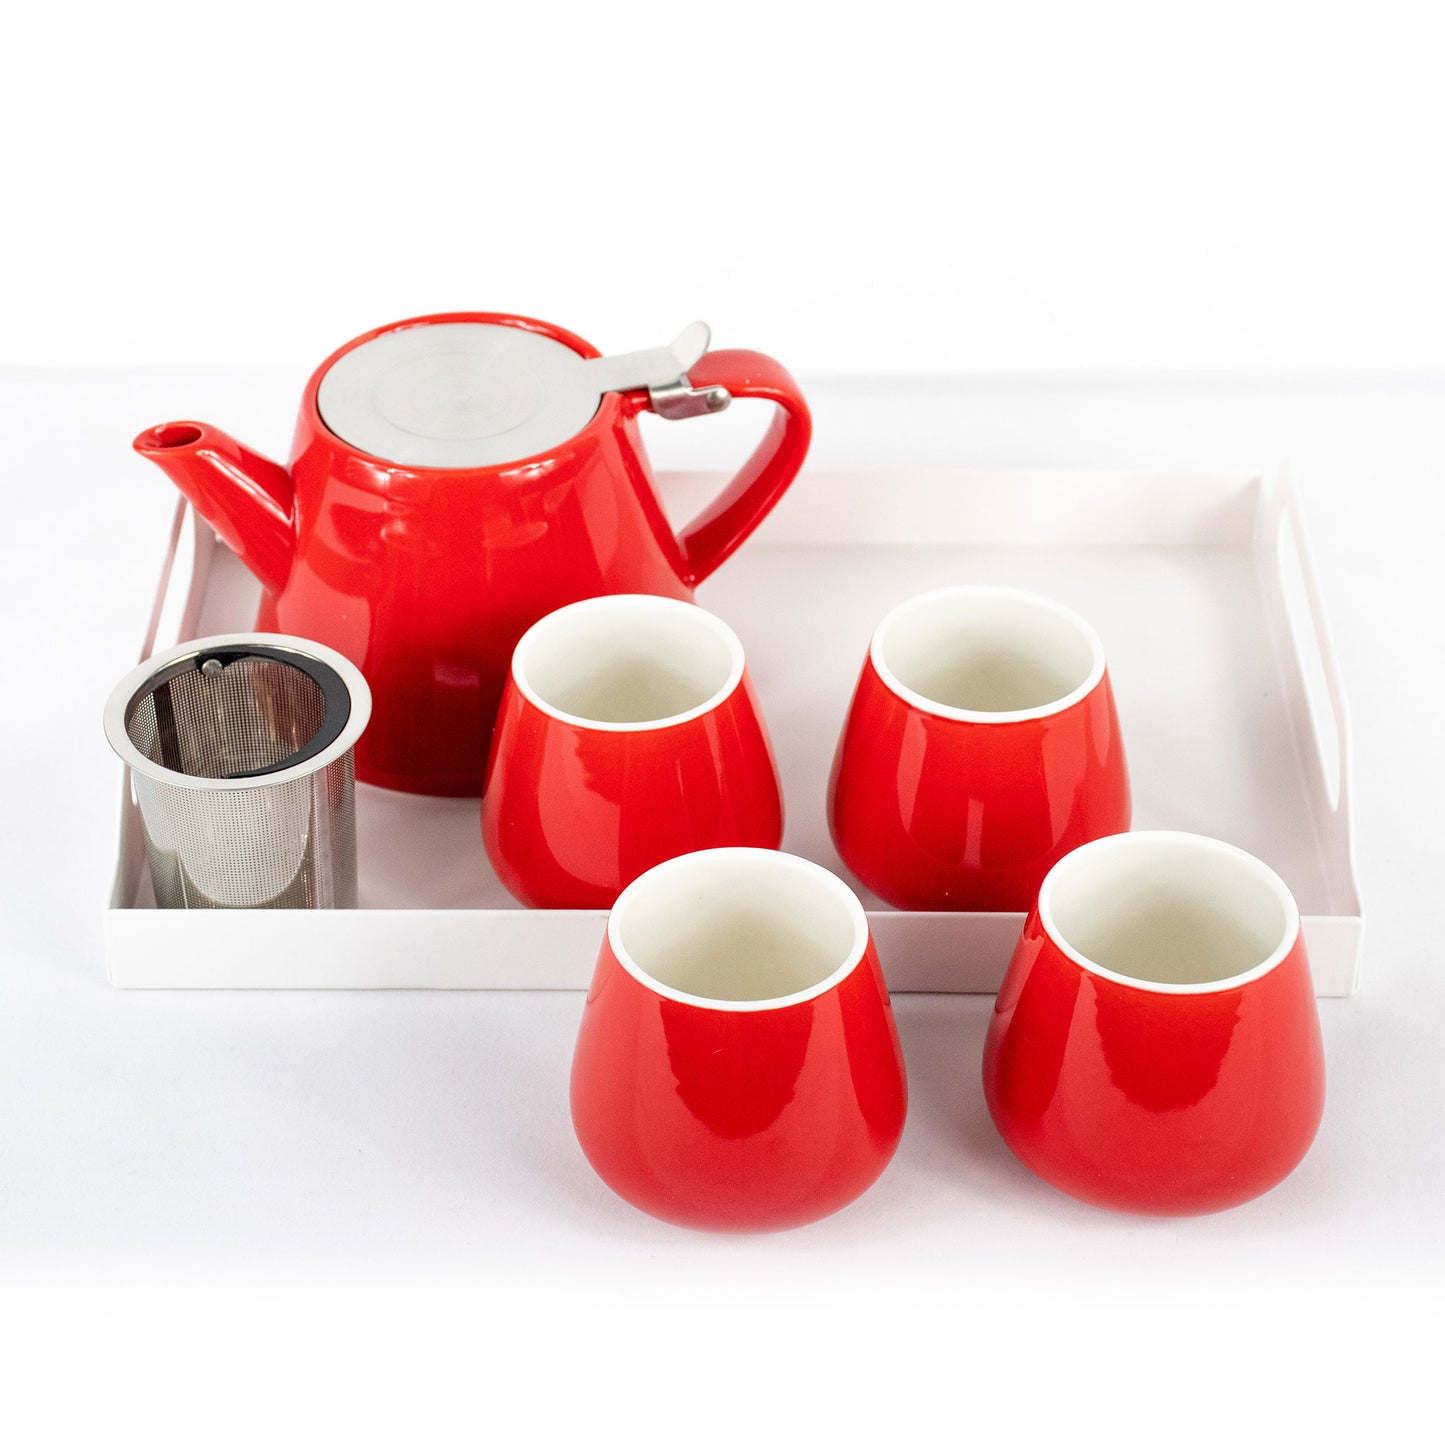 4 Cup Tea Set with Teapot